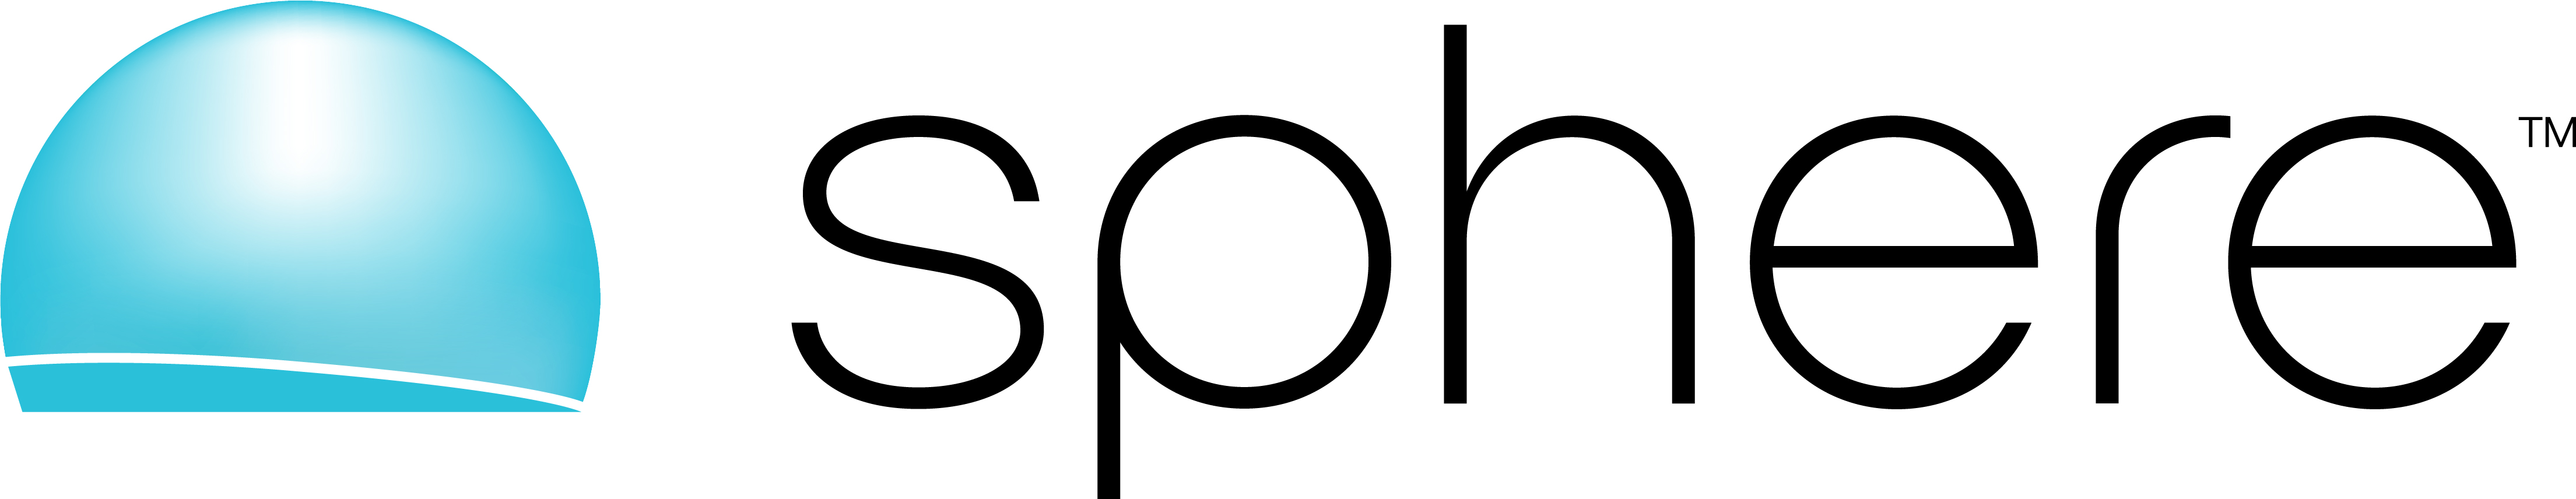 Sphere_Logo_CMYK_Black.jpg